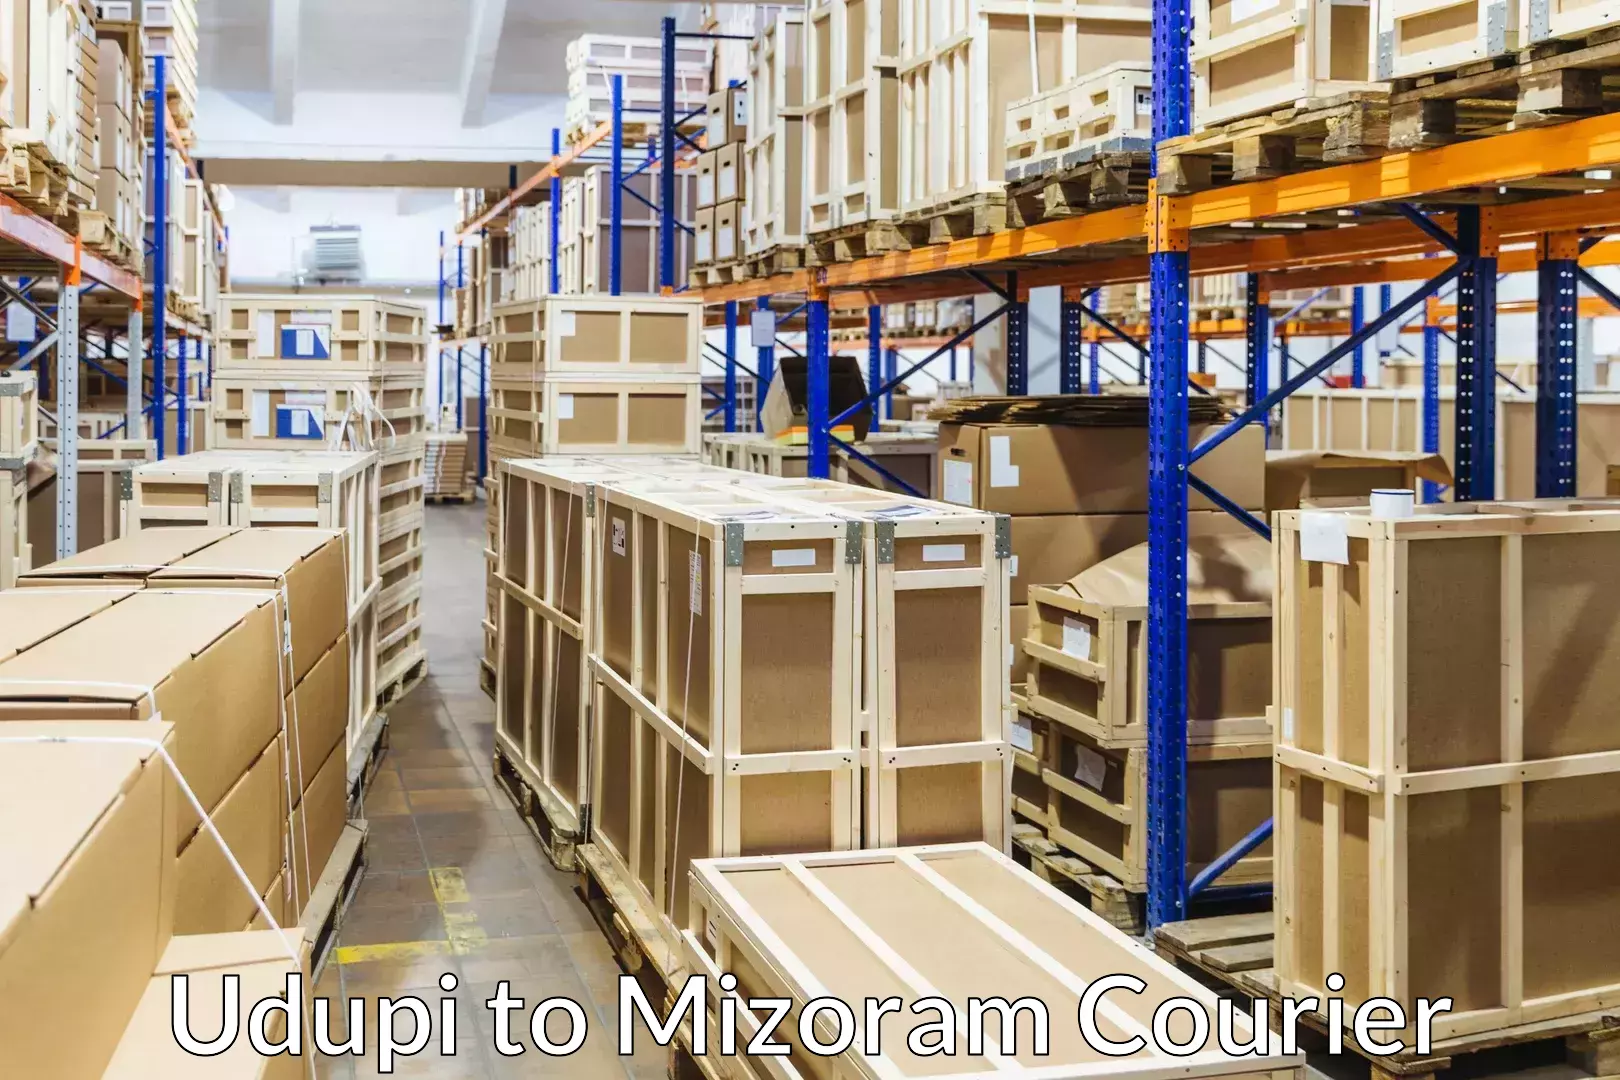 Furniture transport company Udupi to Mizoram